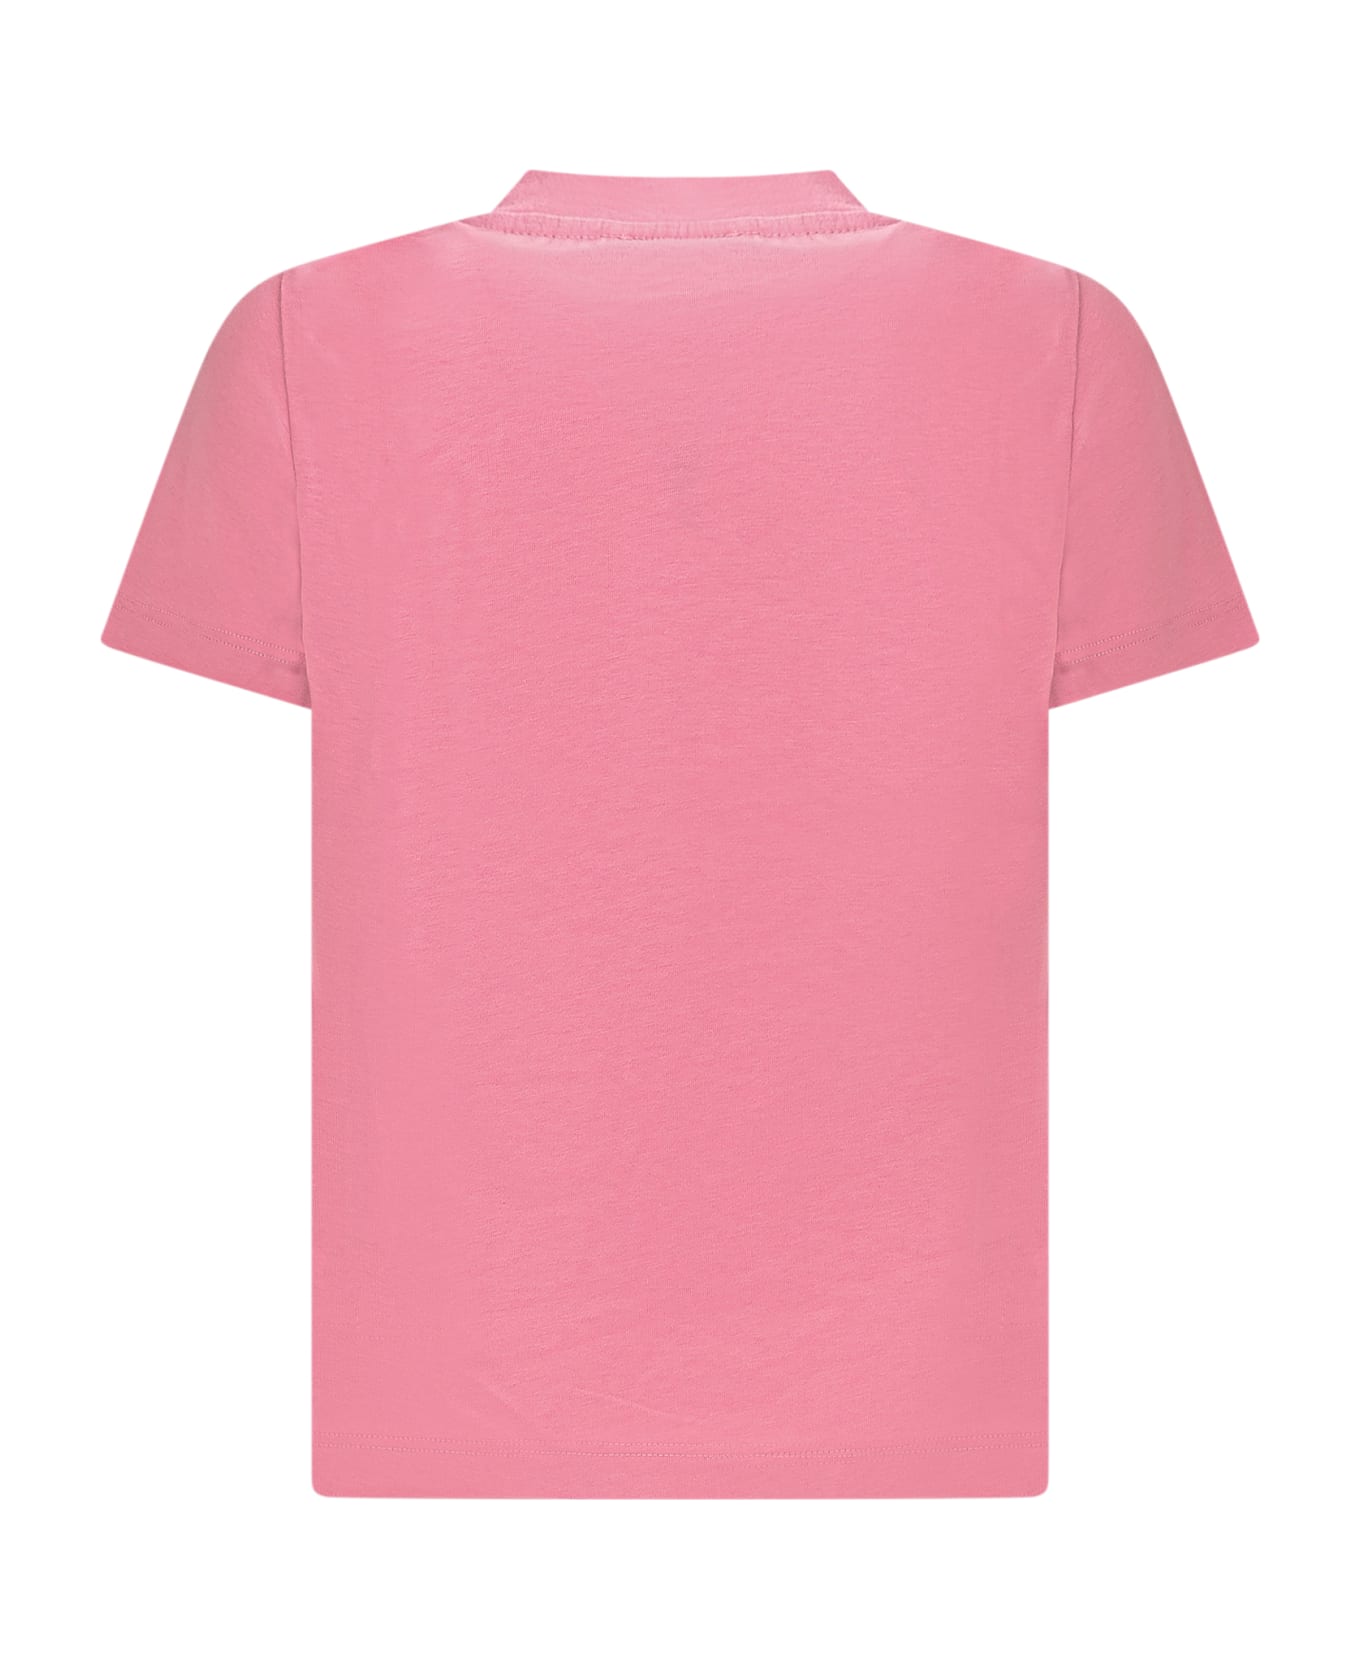 Young Versace T-shirt With Logo - TUTU PINK-BIANCO